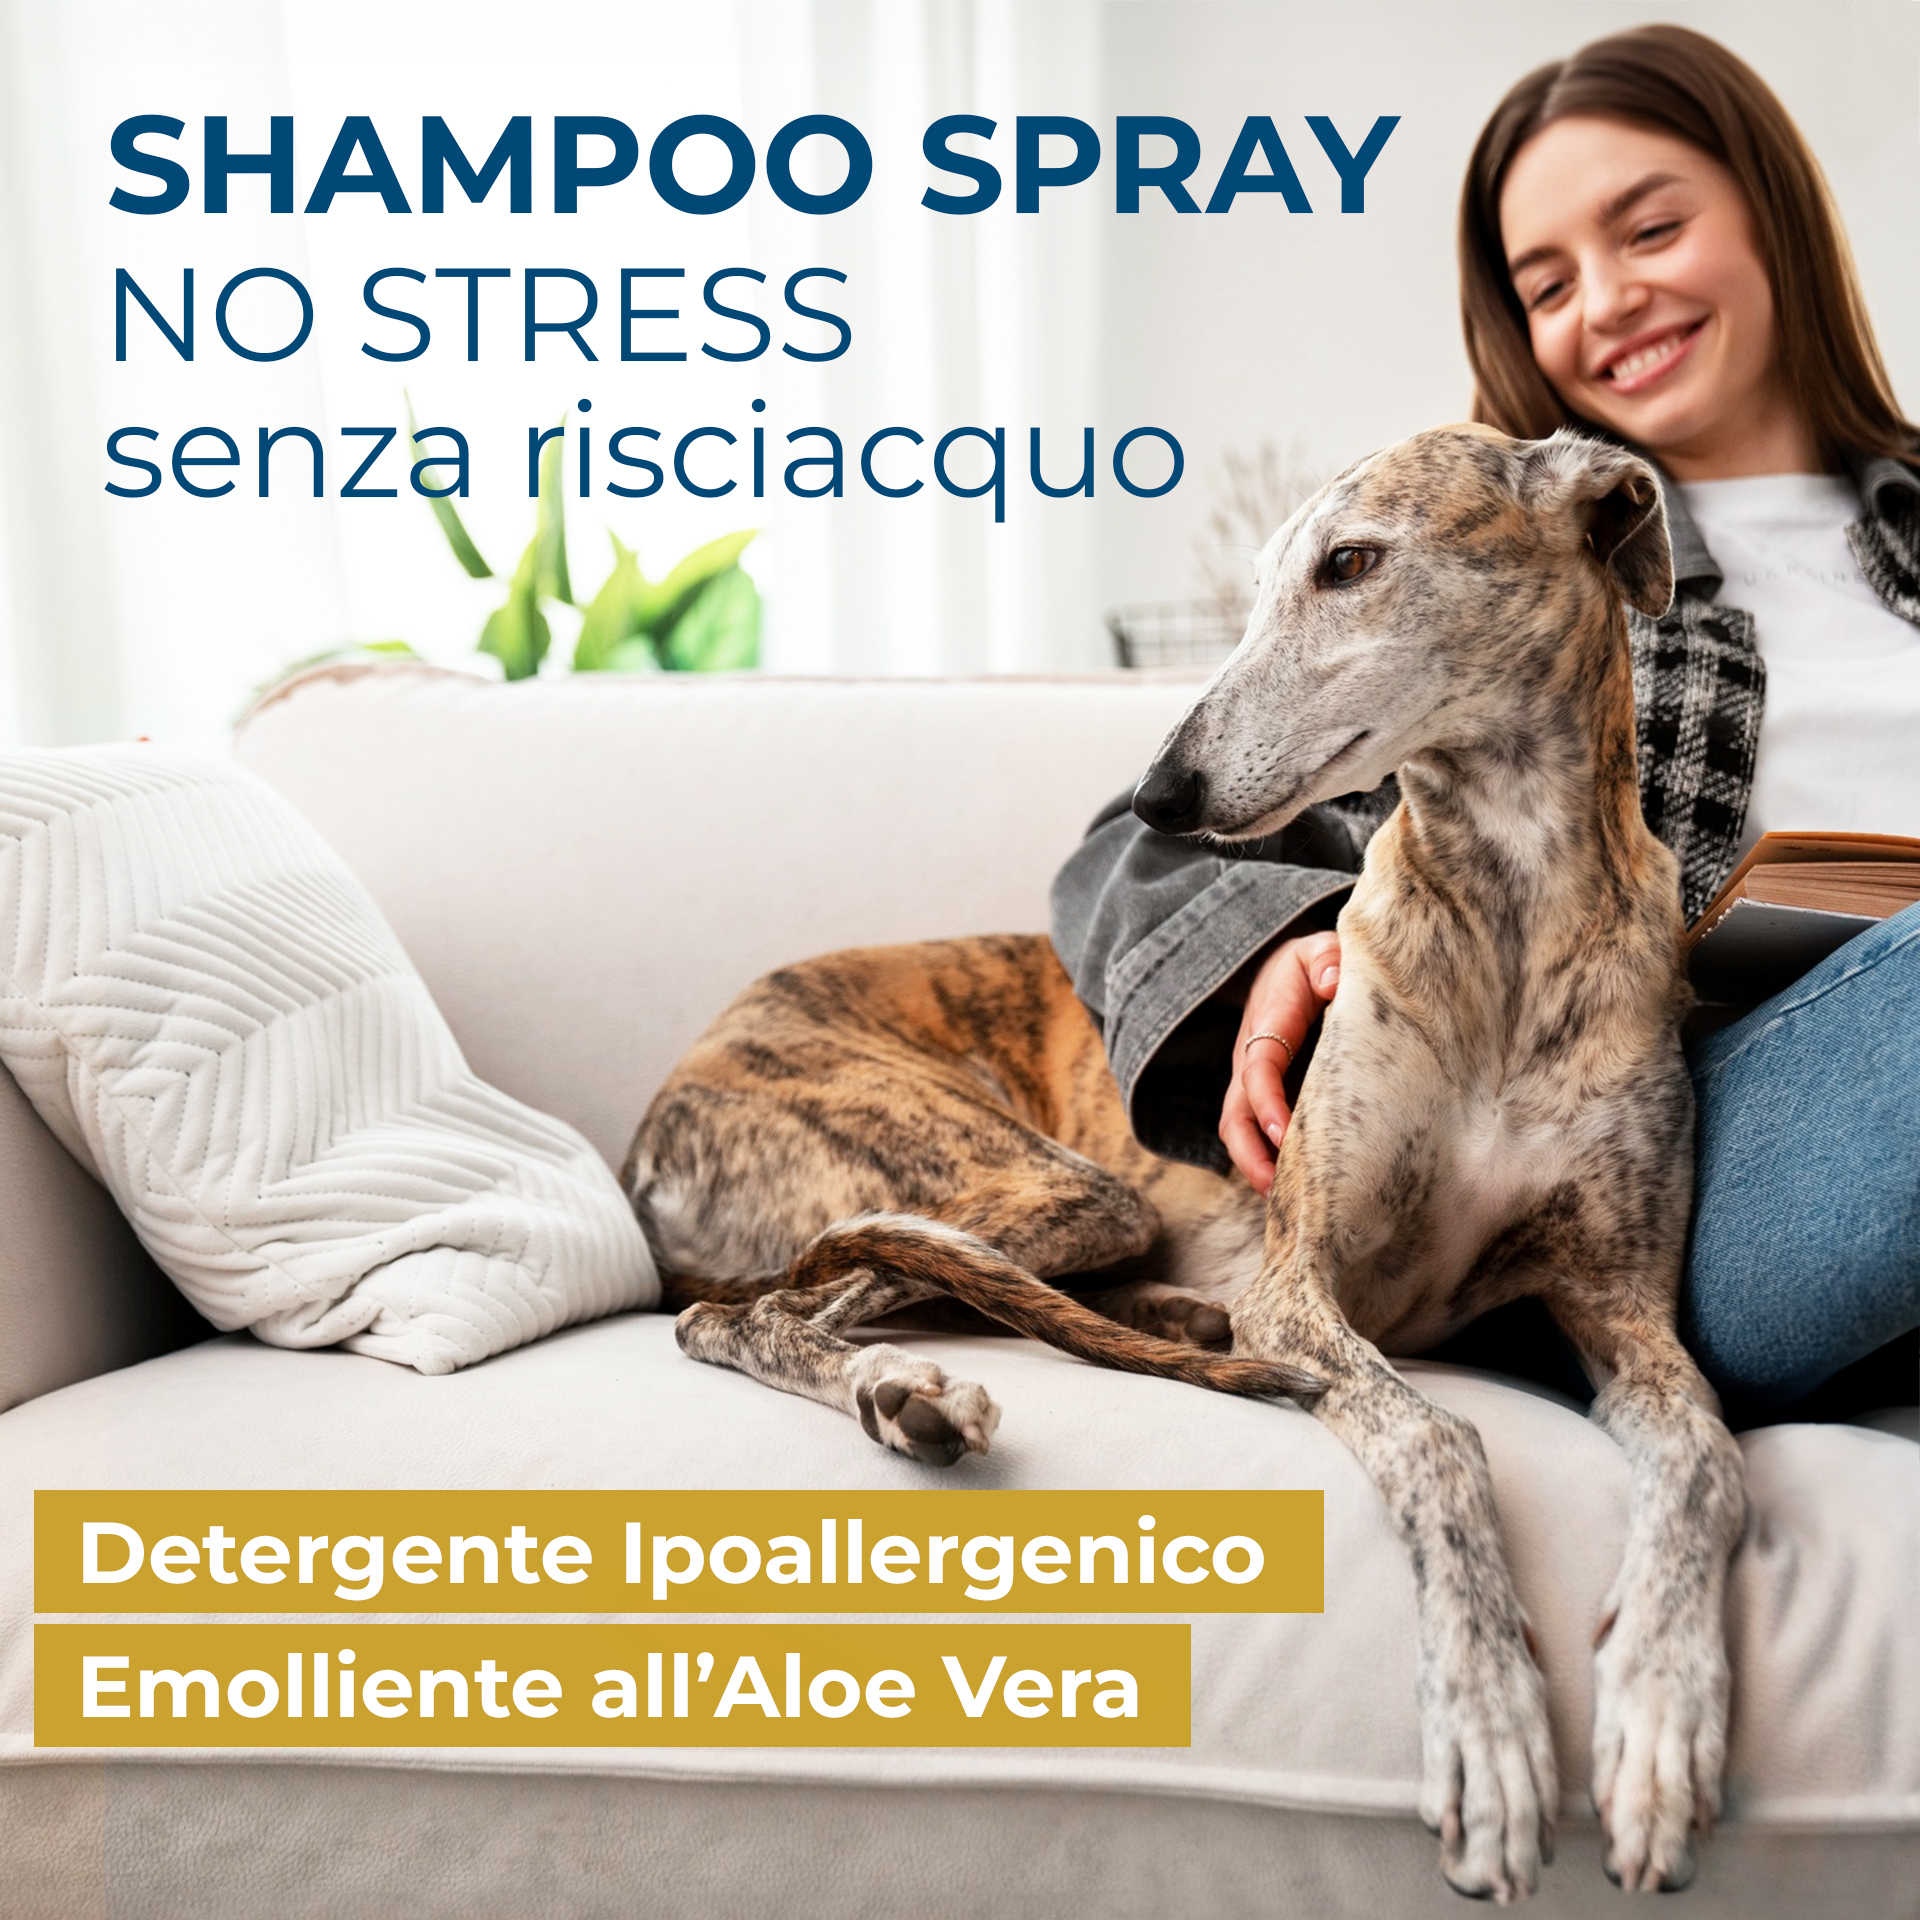 Shampoo spray senza stress e senza risciacquo, detergente ipoallergenico emolliente all'aloe vera